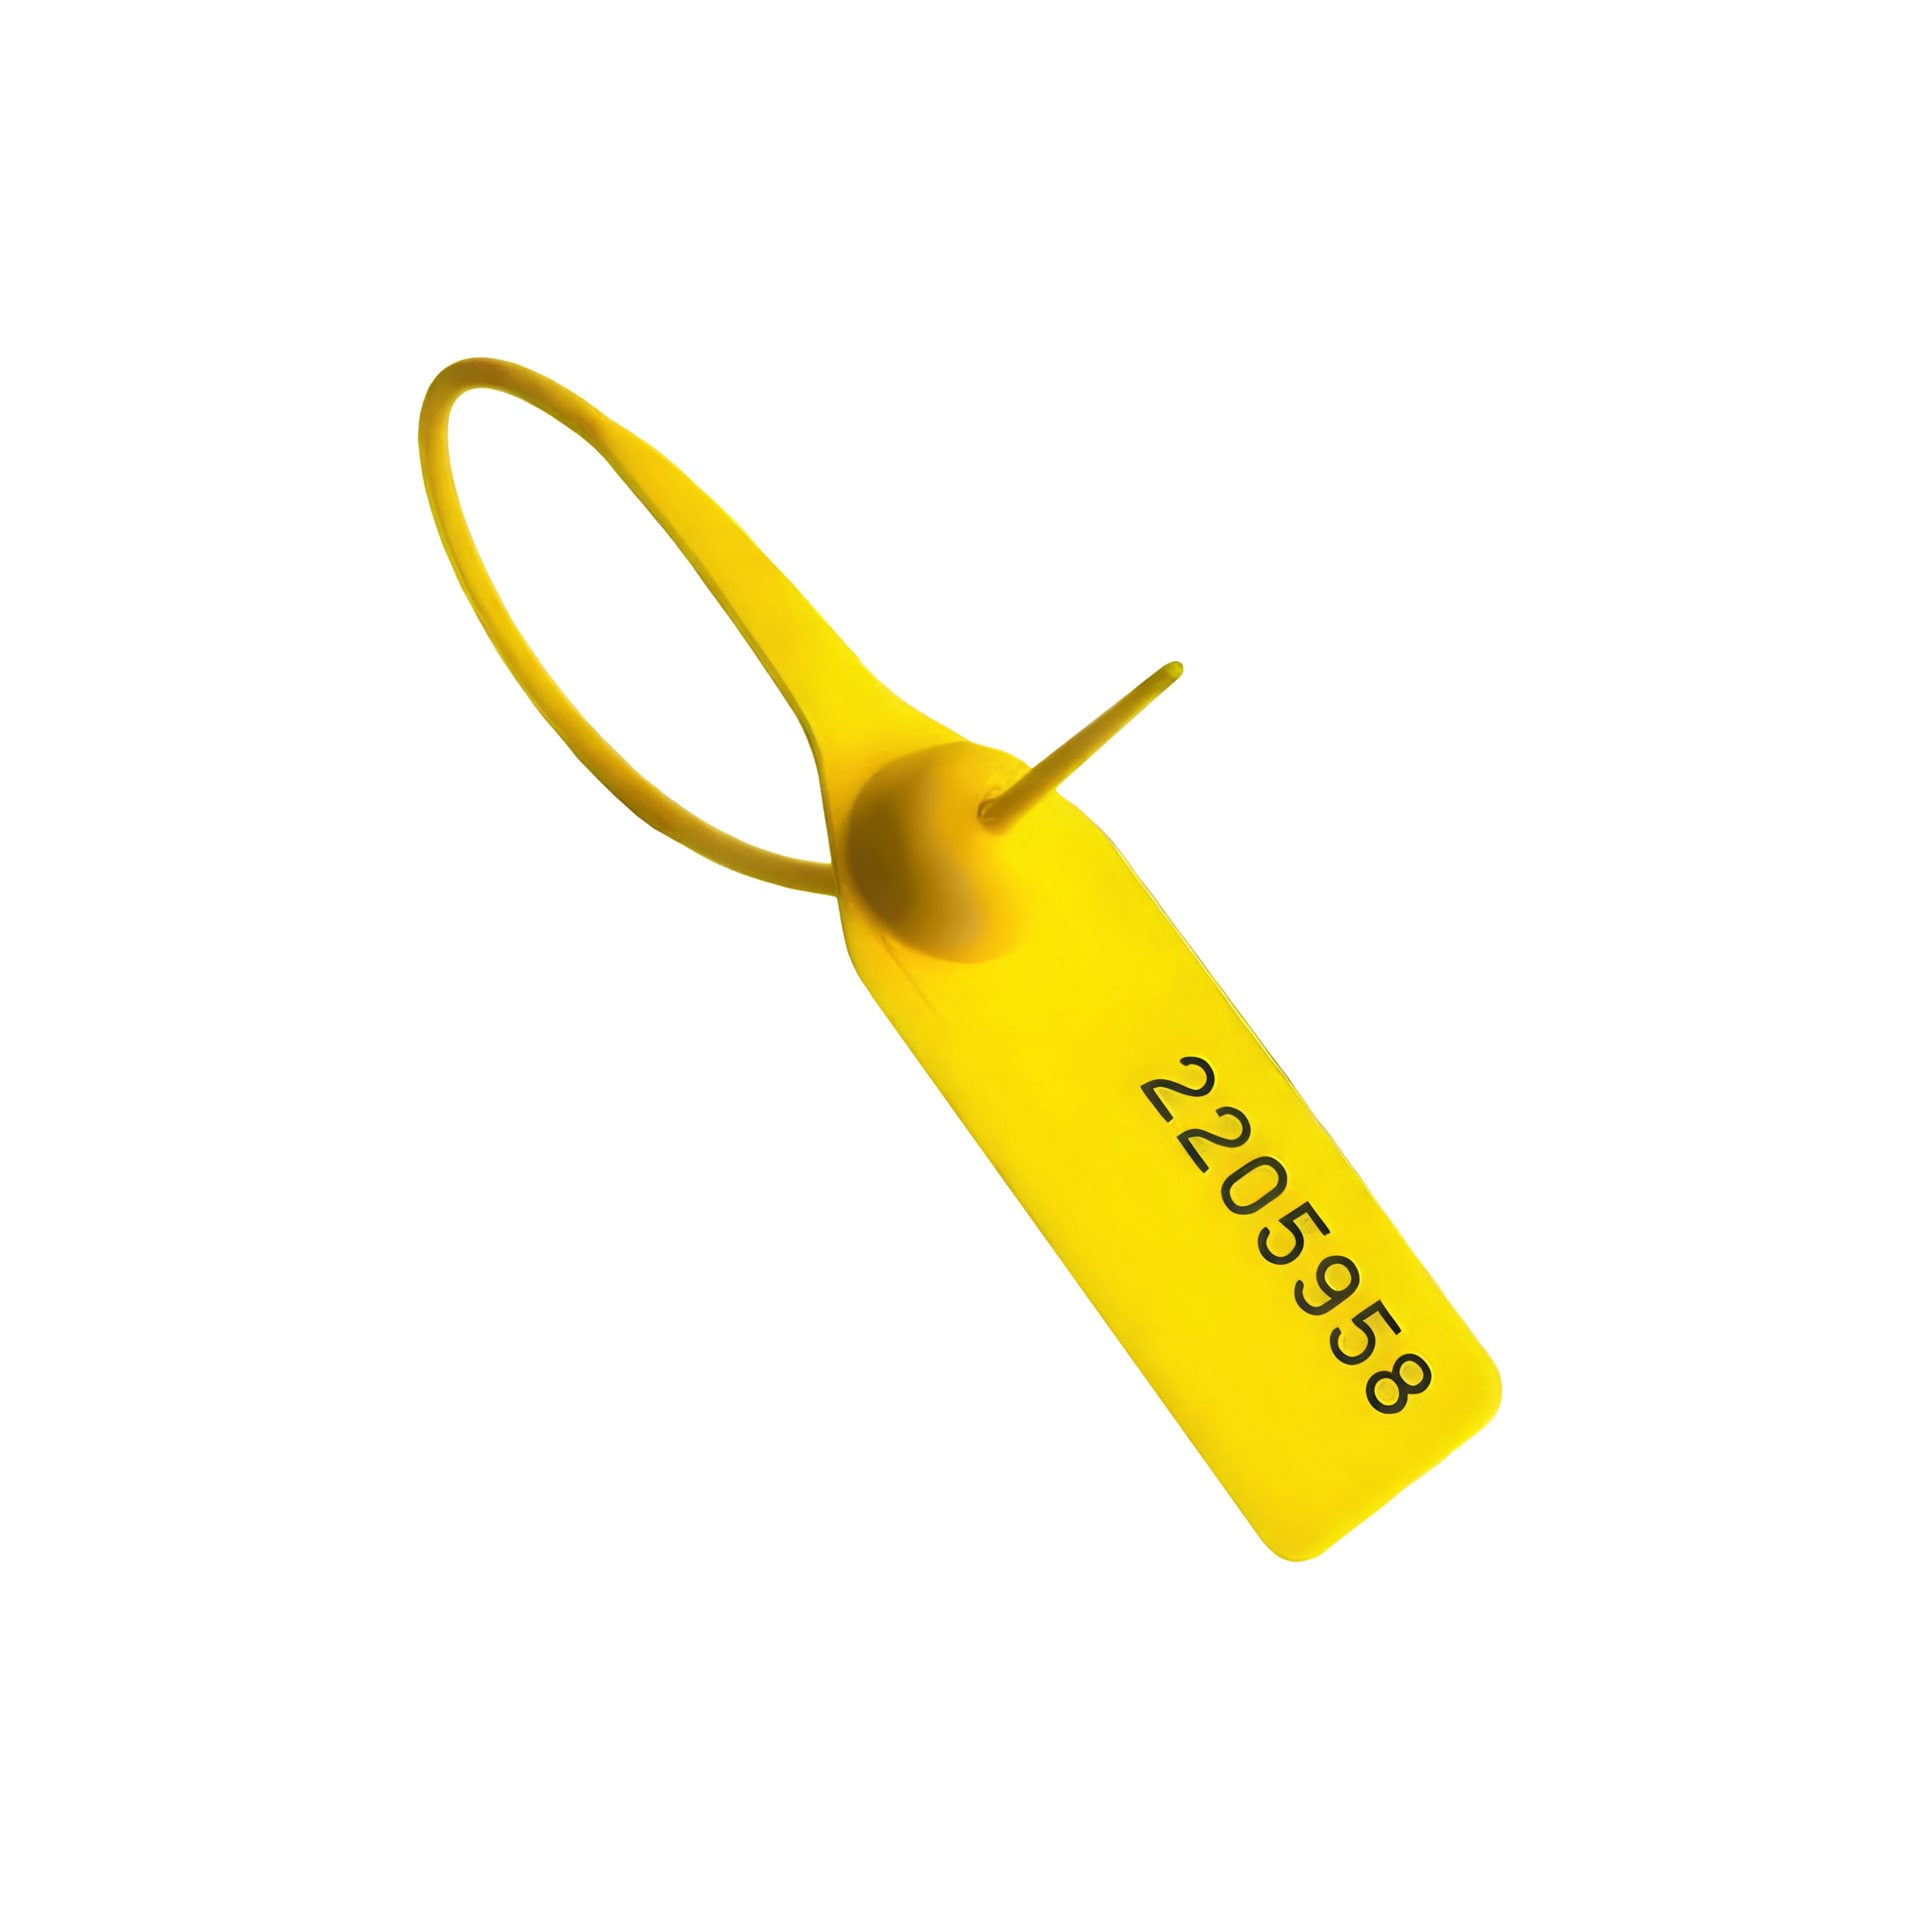 Пломба номерная пластиковая ОСА-330 желтый оптом в наличии, на заказ